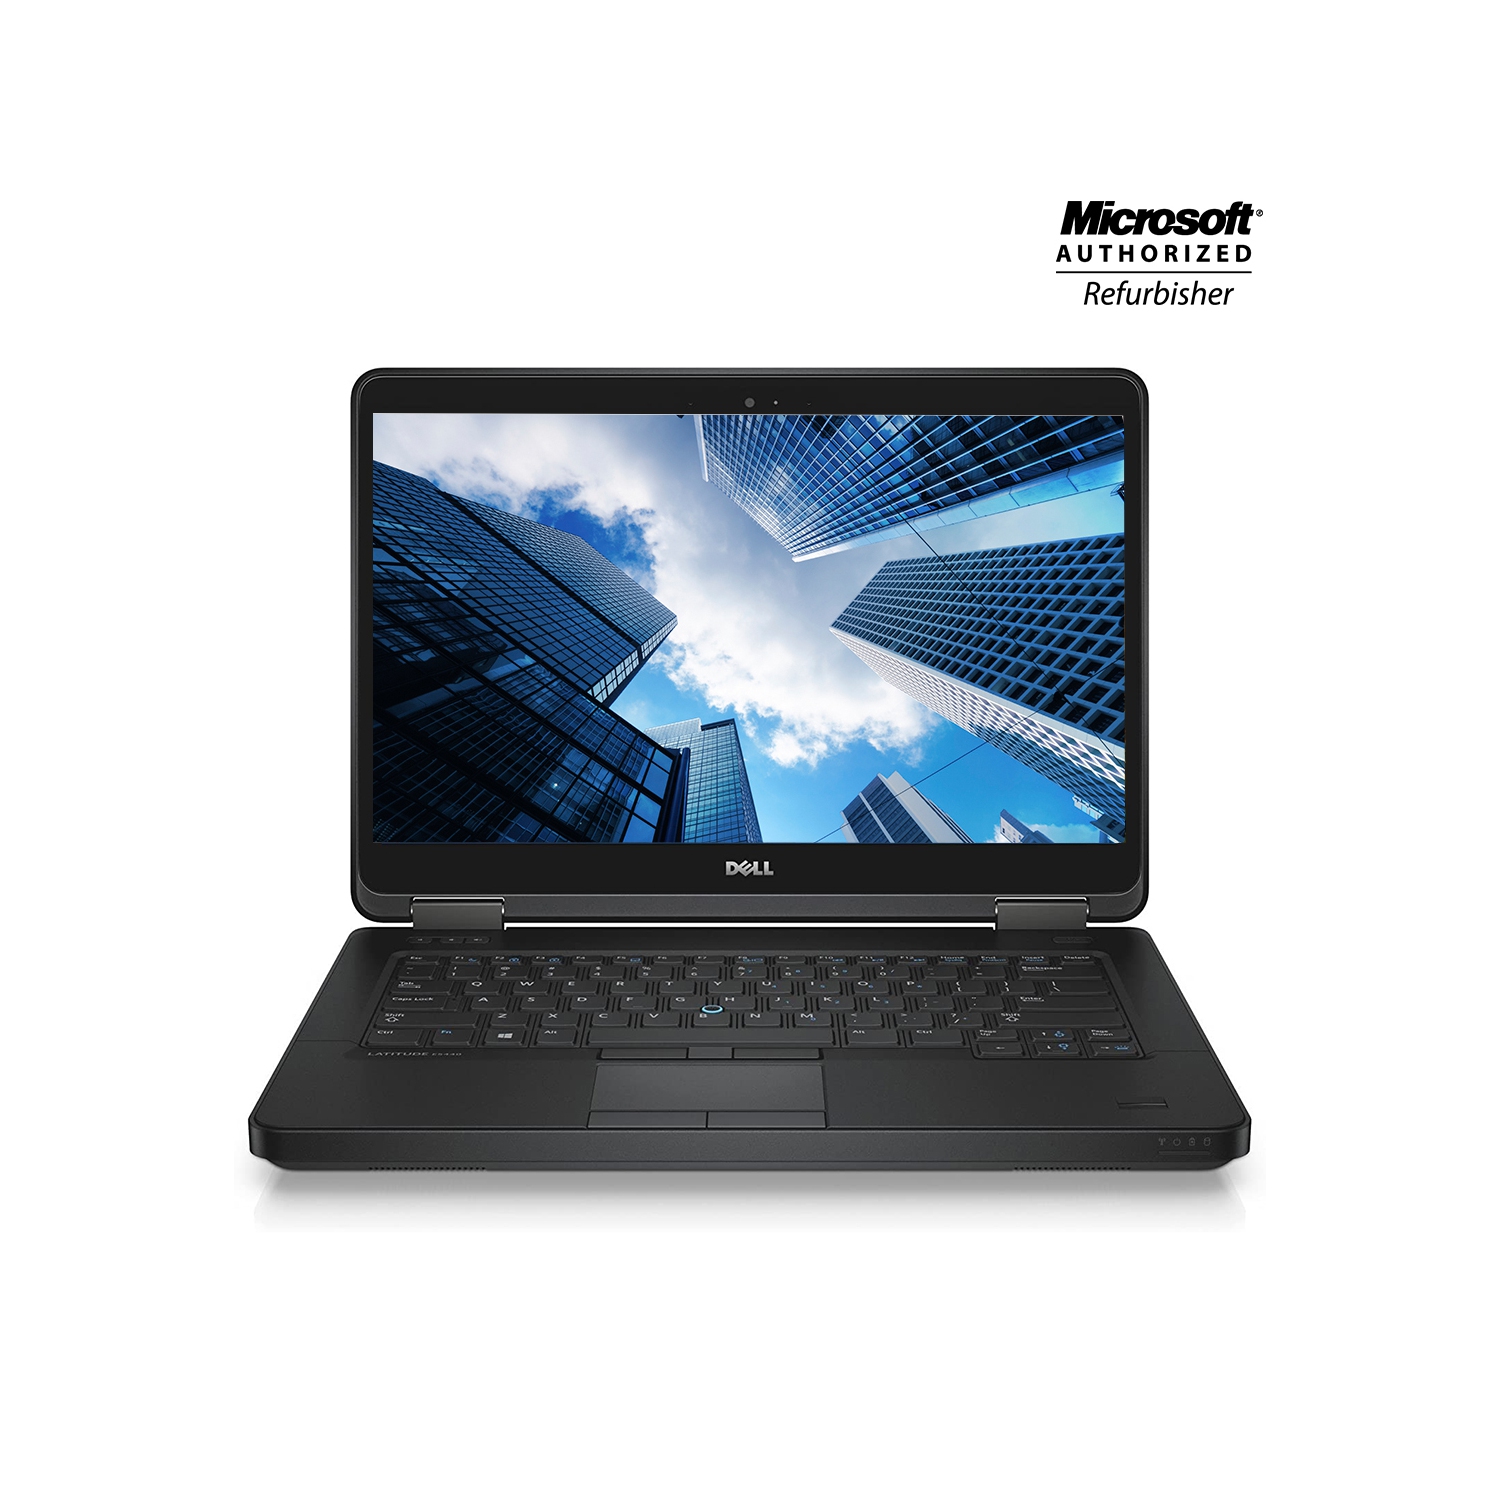 Refurbished (Excellent) - Dell Latitude E5450 Laptop 14" Core i7 5600U 16GB RAM 256GB SSD Win10 Home WiFi Bluetooth